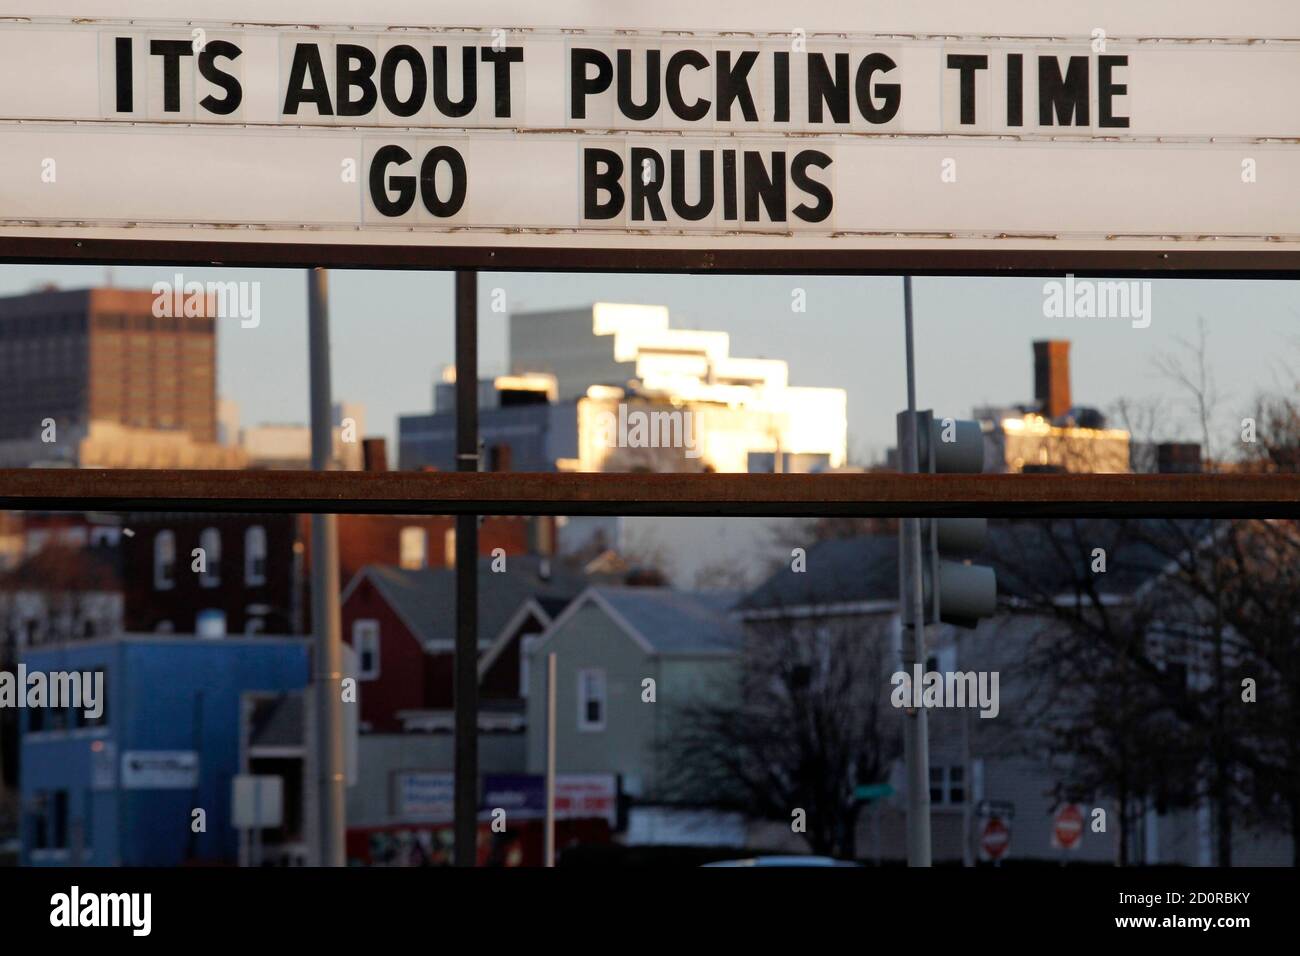 Go Bruins!